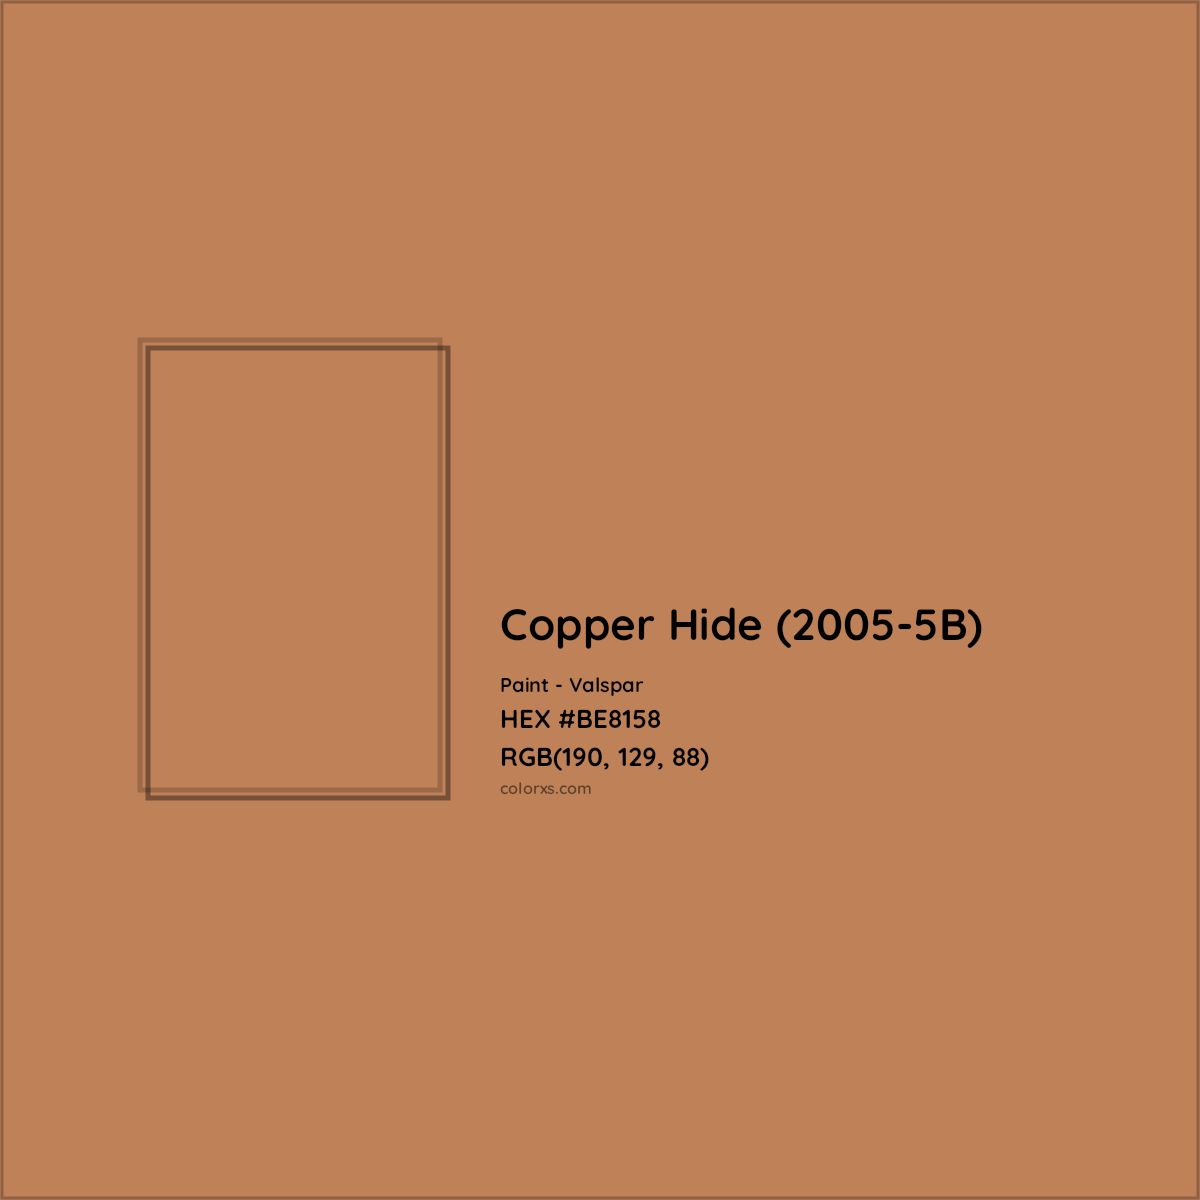 HEX #BE8158 Copper Hide (2005-5B) Paint Valspar - Color Code